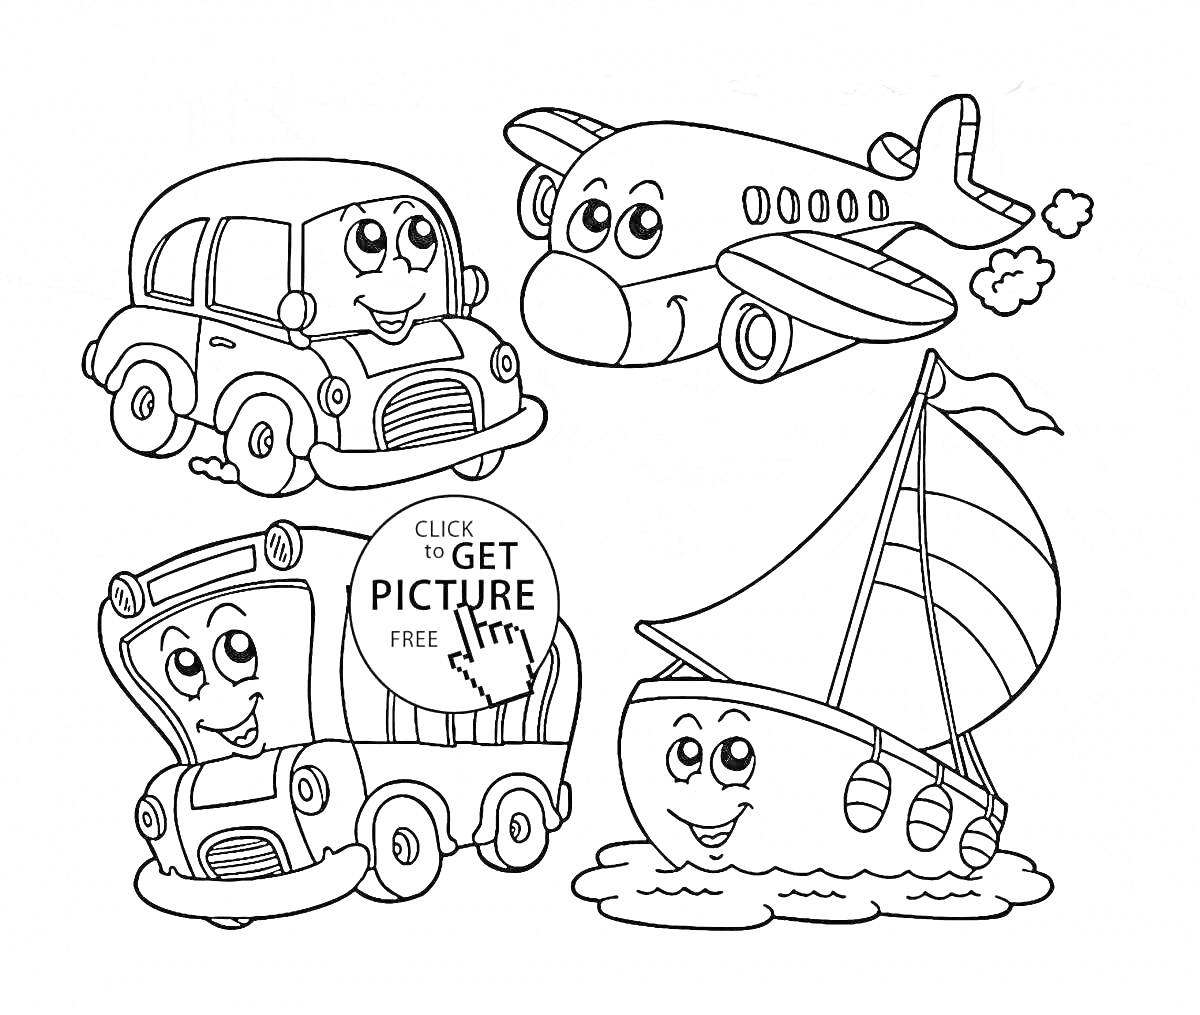 Автомобиль, самолёт, автобус и корабль с весёлыми лицами